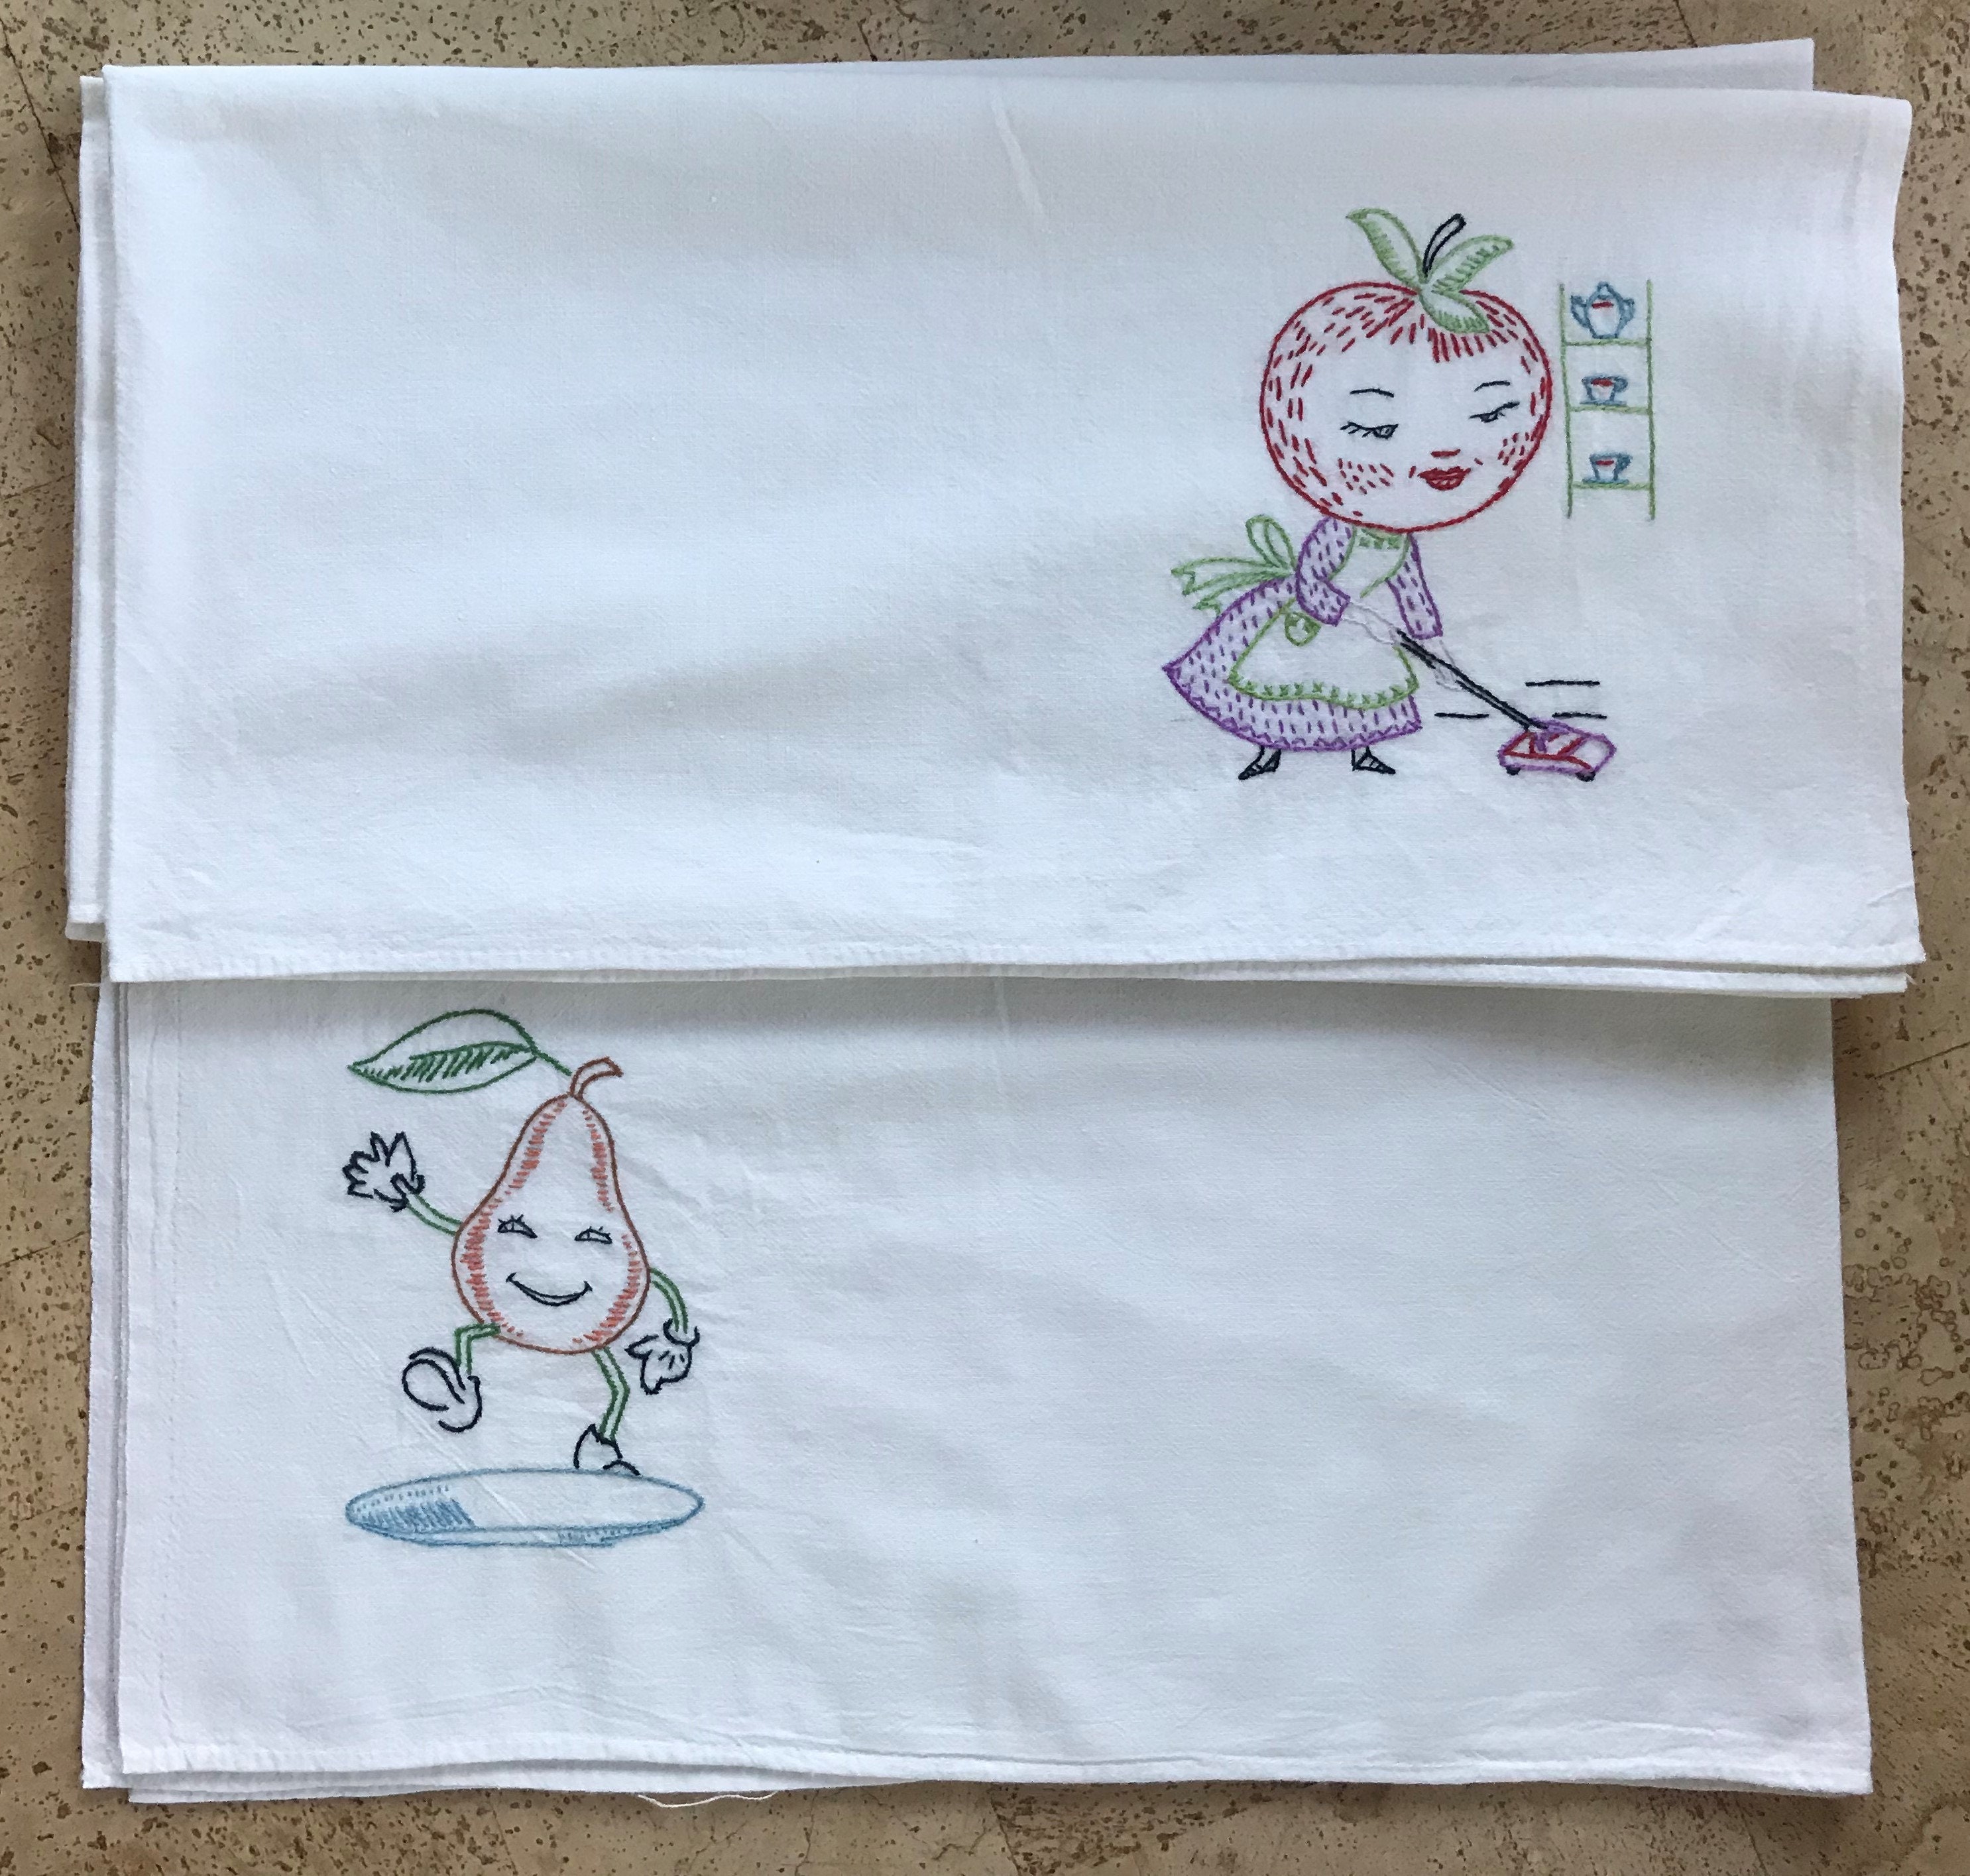 Decorative Towel Fruitgroup Kitchen Towel Set/2 100% Cotton 50S